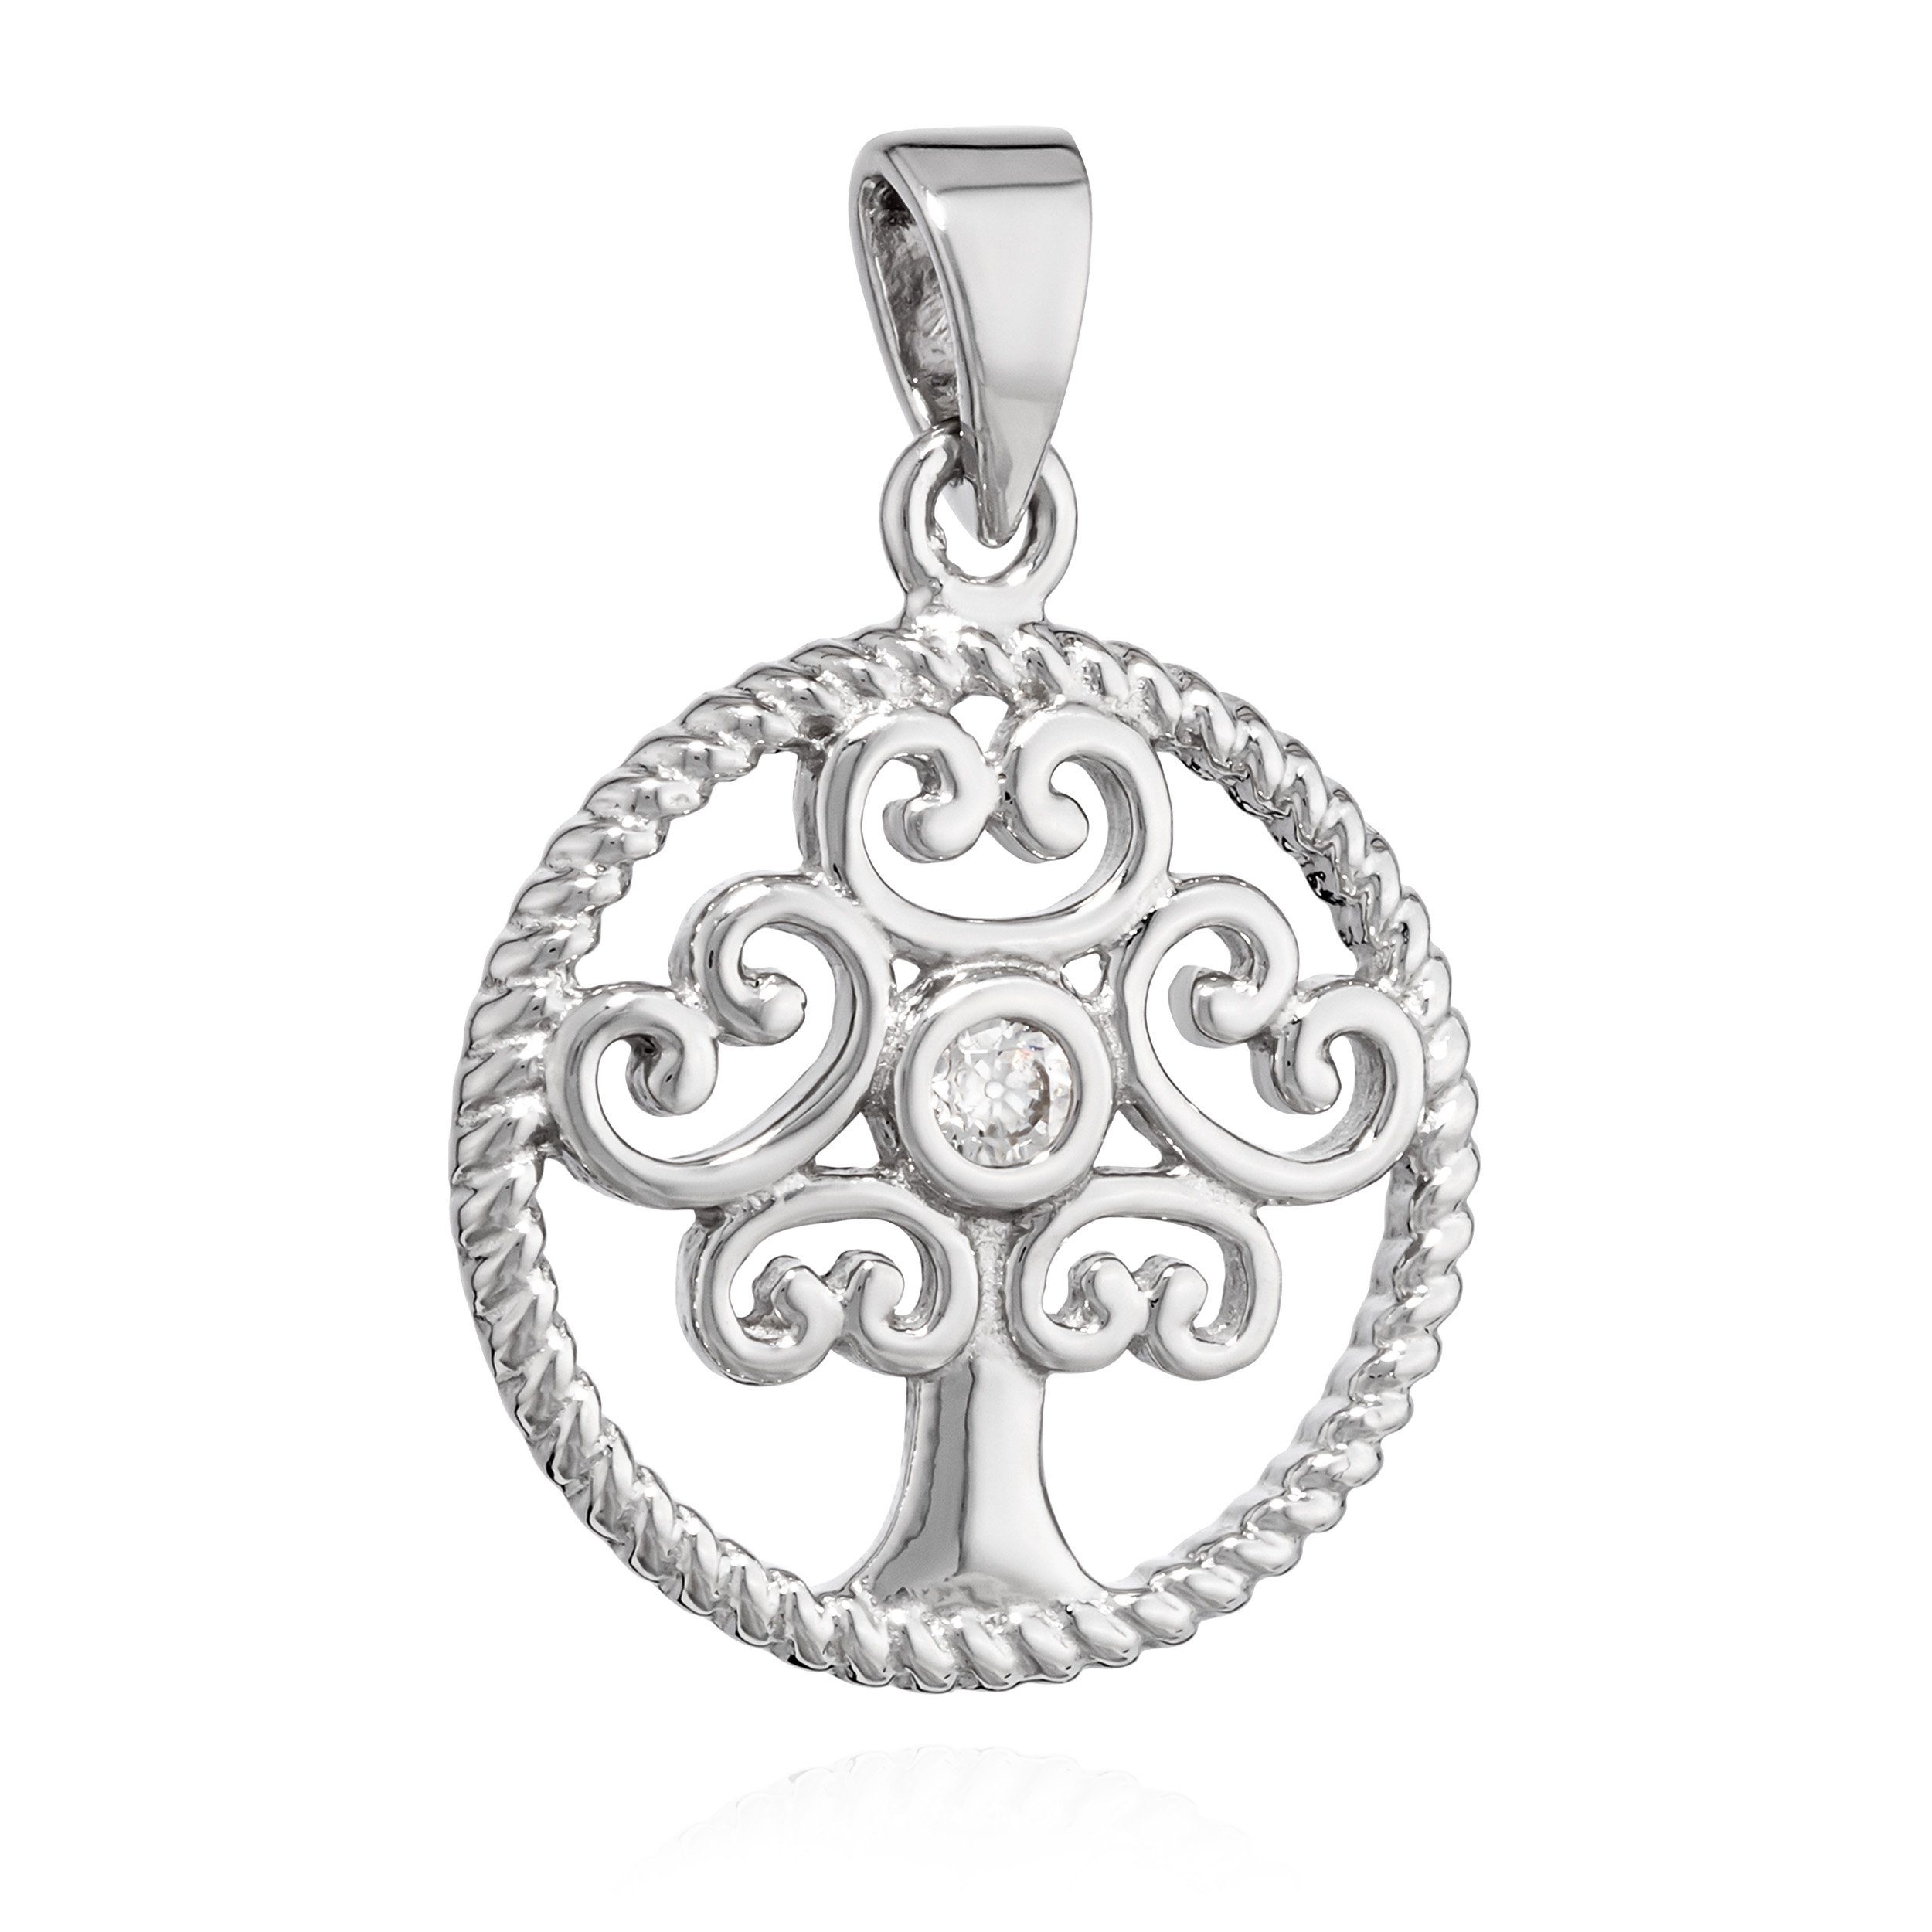 Zirkonia 925 Kristal Lebens weiß Kettenanhänger Silber des 14,8mm Kettenanhänger Baum NKlaus